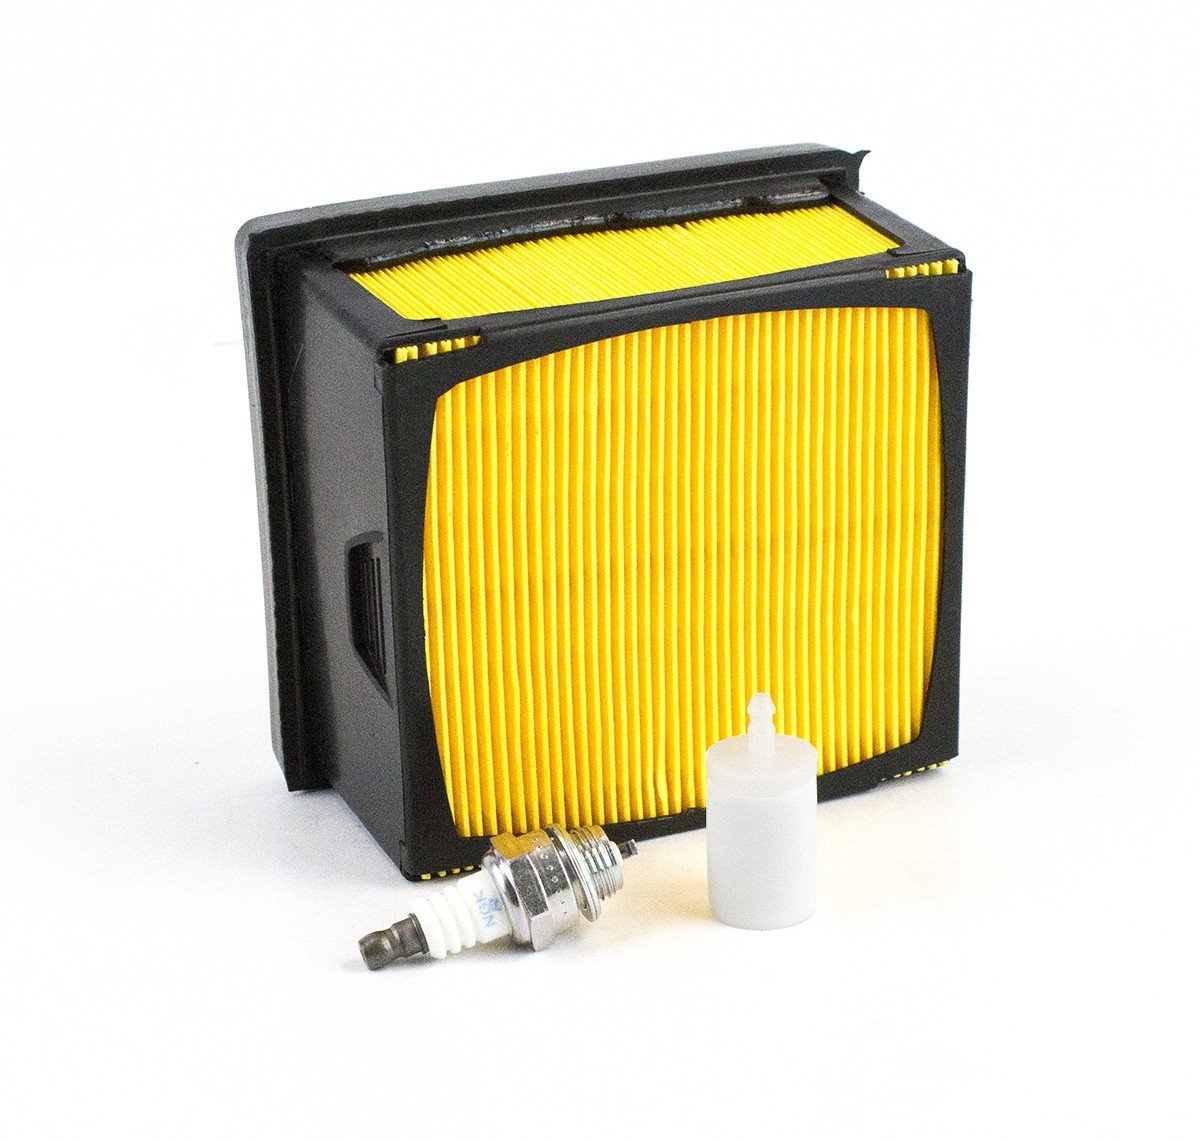 Air Filter Fuel Filter Spark Plug Kit fits Husqvarna K760